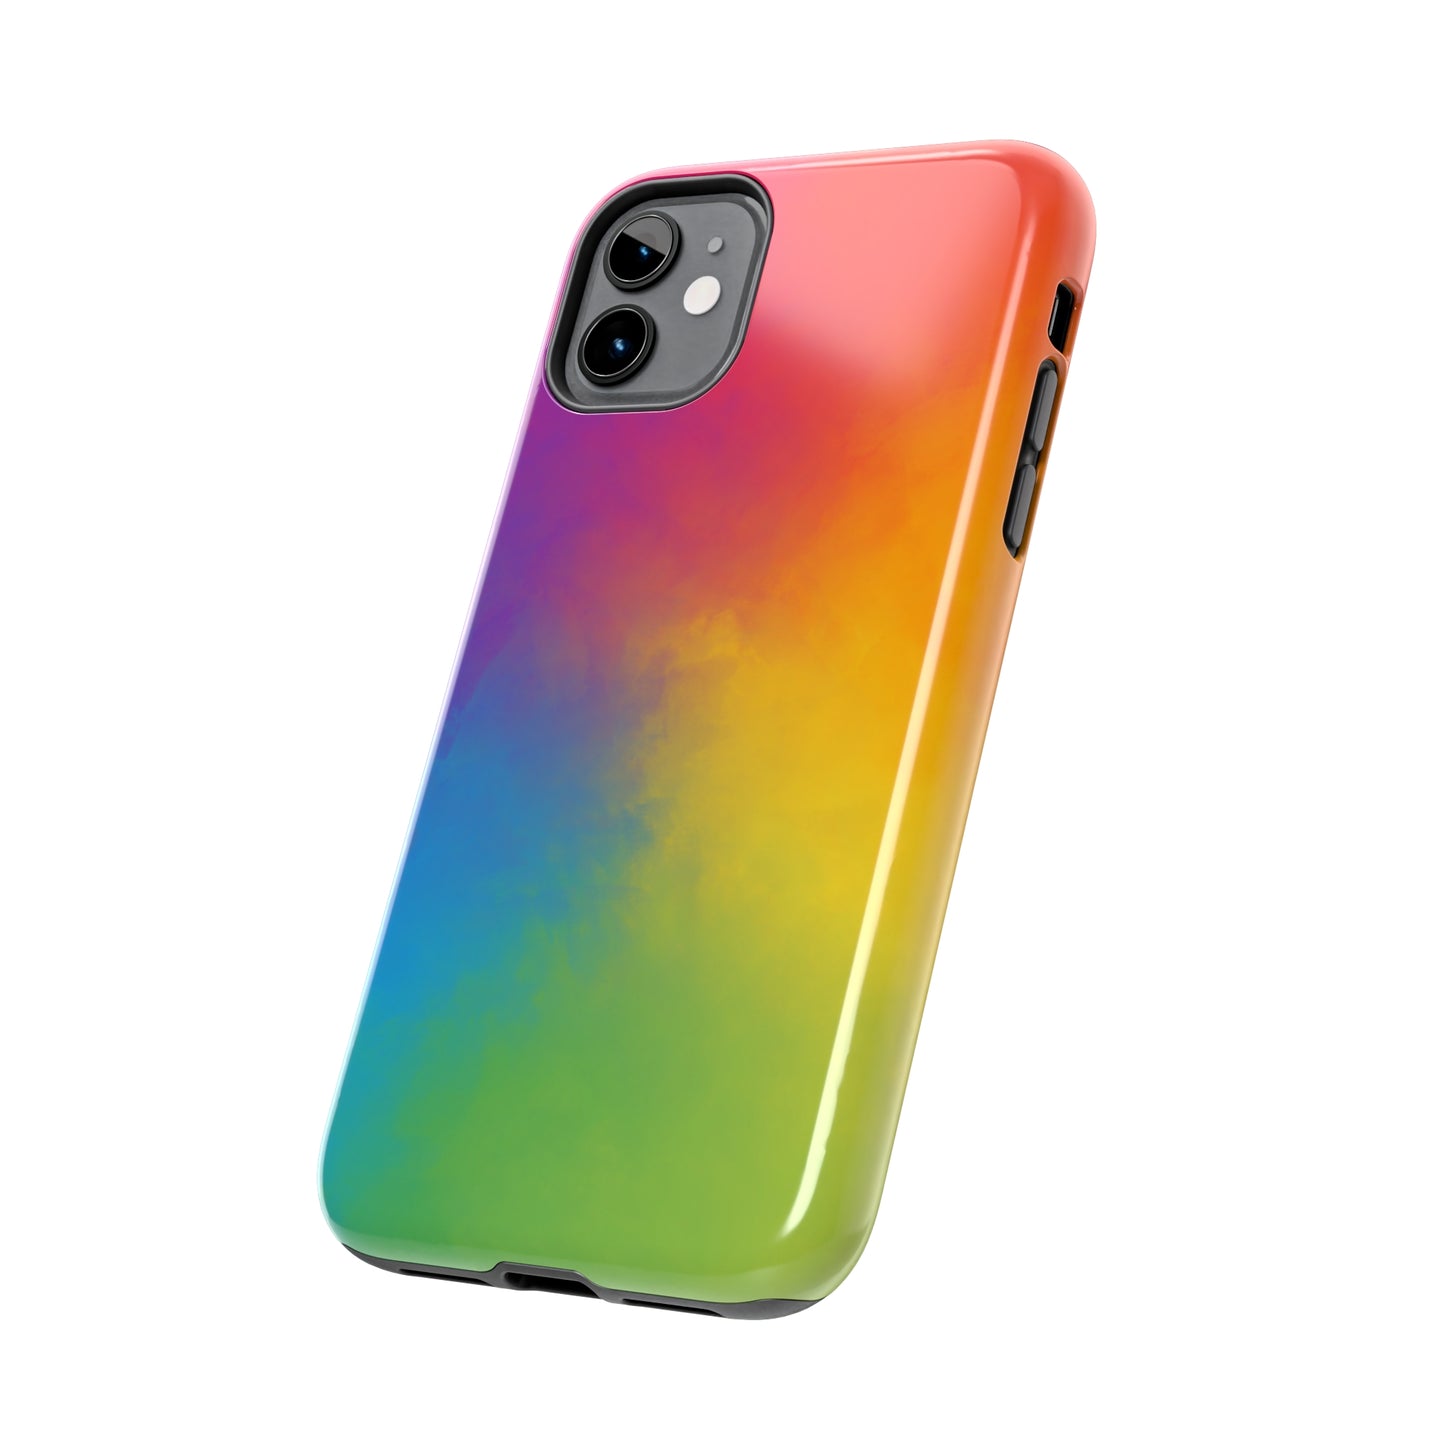 Perfect Rainbow Phone Case